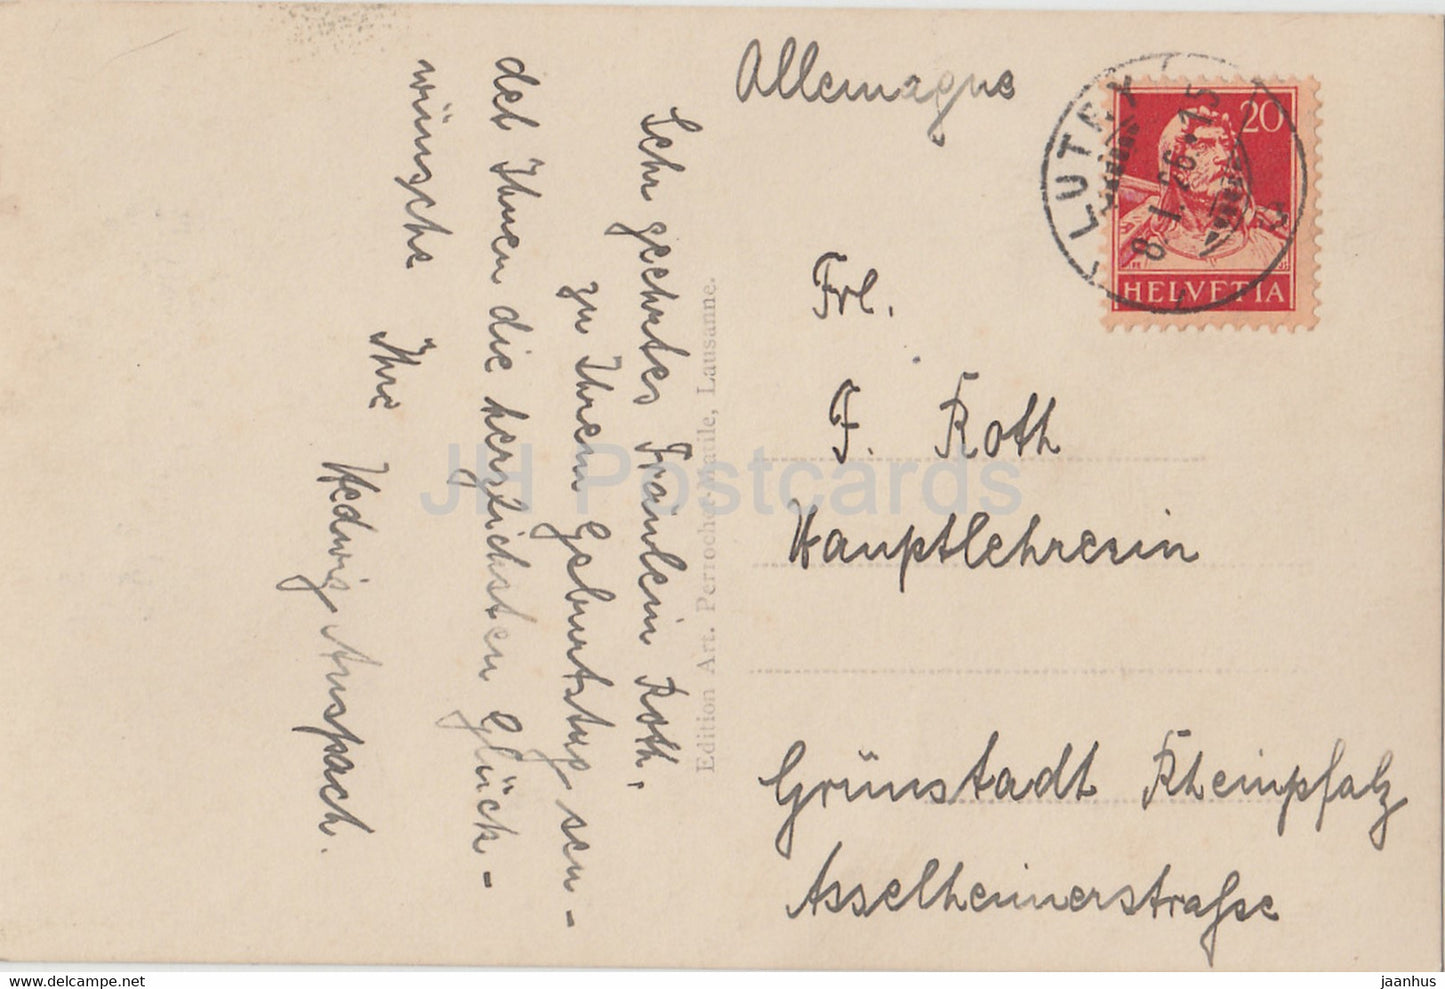 Chateau de Chillon et Montreux - 7394 - alte Postkarte - 1926 - Schweiz - gebraucht